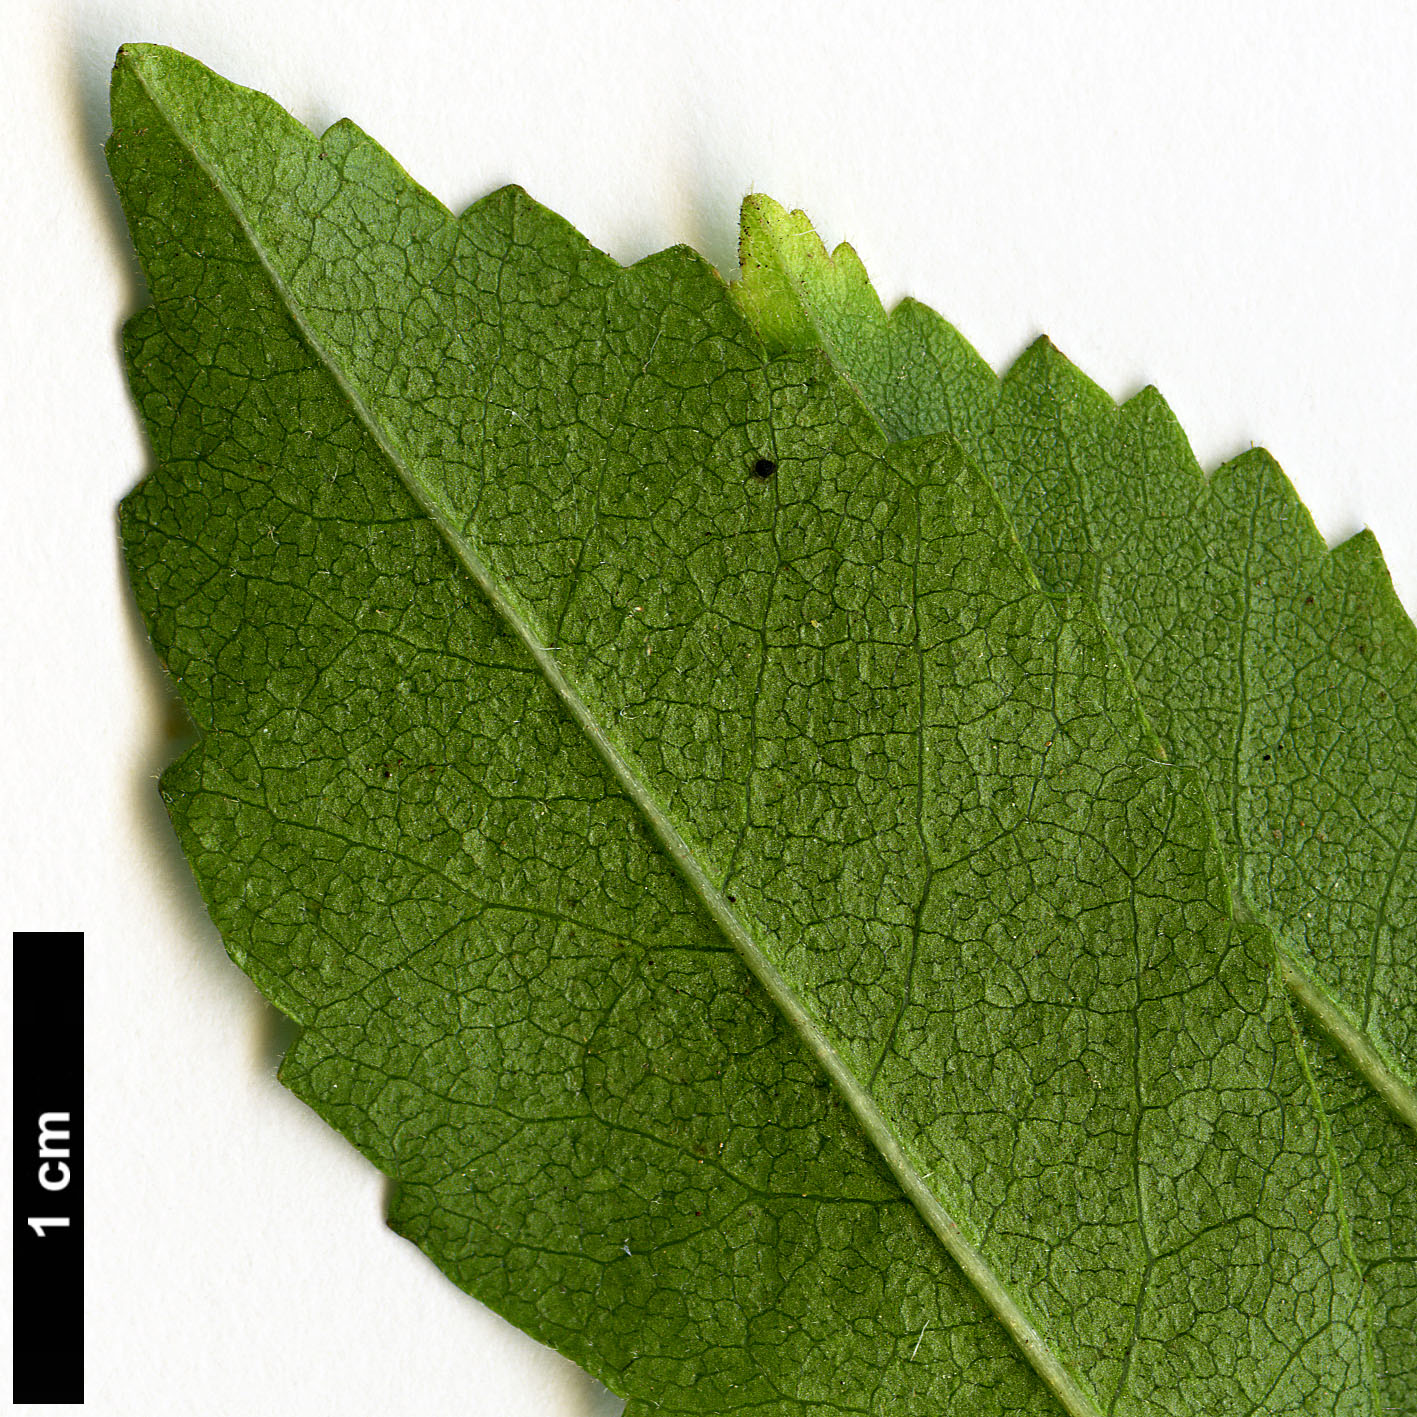 High resolution image: Family: Malvaceae - Genus: Plagianthus - Taxon: regius